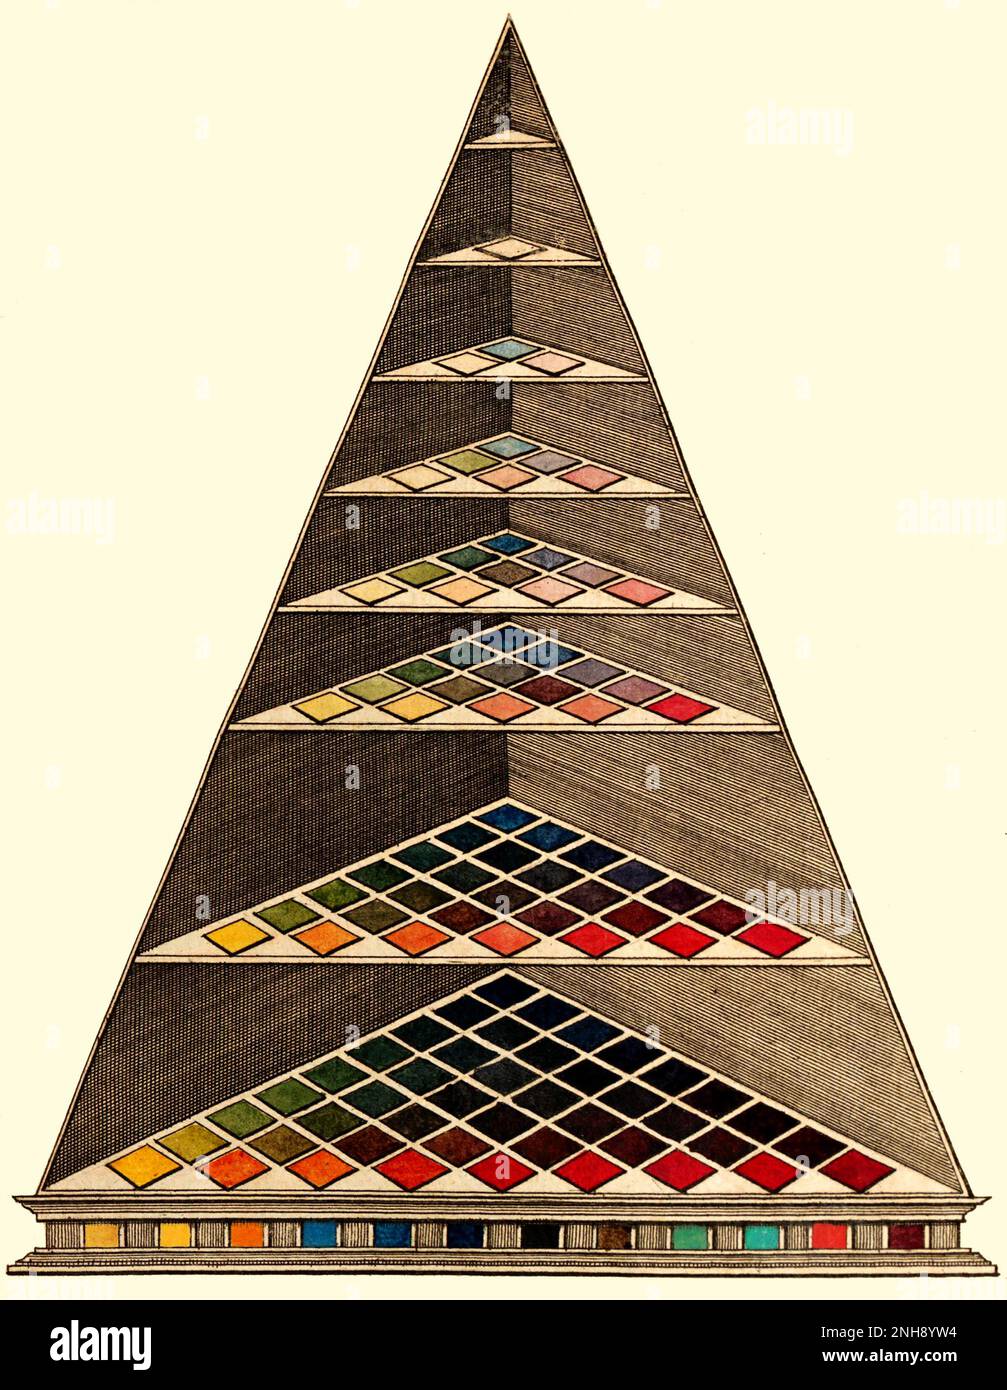 Lamberts Farbpyramide von 1772. Die Lambertian-Farbpyramide war das erste dreidimensionale Farbmodell und sollte die Verwendung von Farben für Einzelhändler und ihre Kunden erleichtern. Johann Heinrich Lambert (1728-1777) war ein schweizerisch-französischer Polymath, der wichtige Beiträge zu den Fächern Mathematik, Physik (insbesondere Optik), Philosophie, Astronomie und Kartenprojektionen leistete. Stockfoto